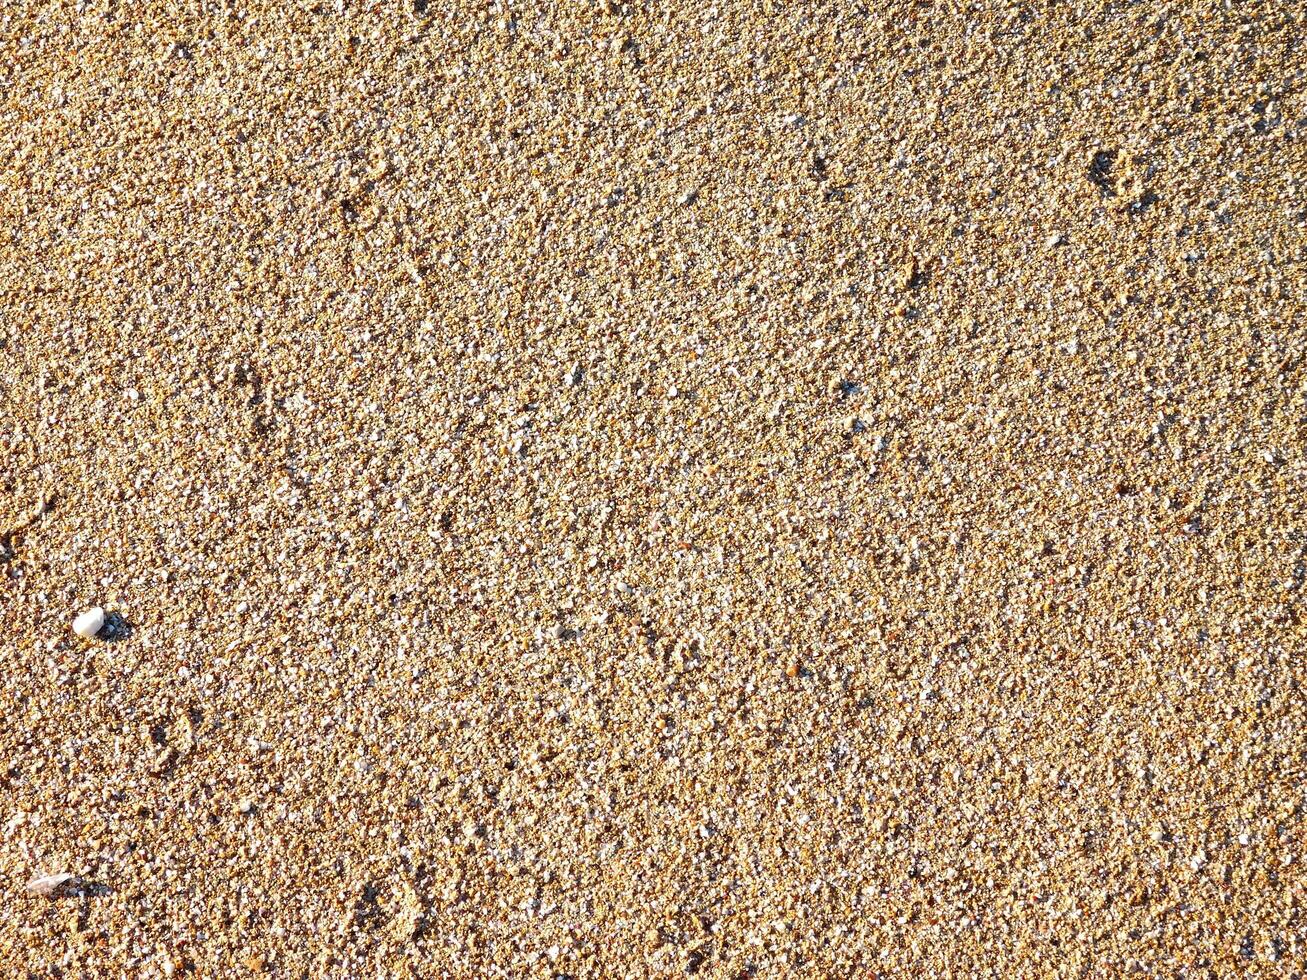 Sand Textur draussen foto